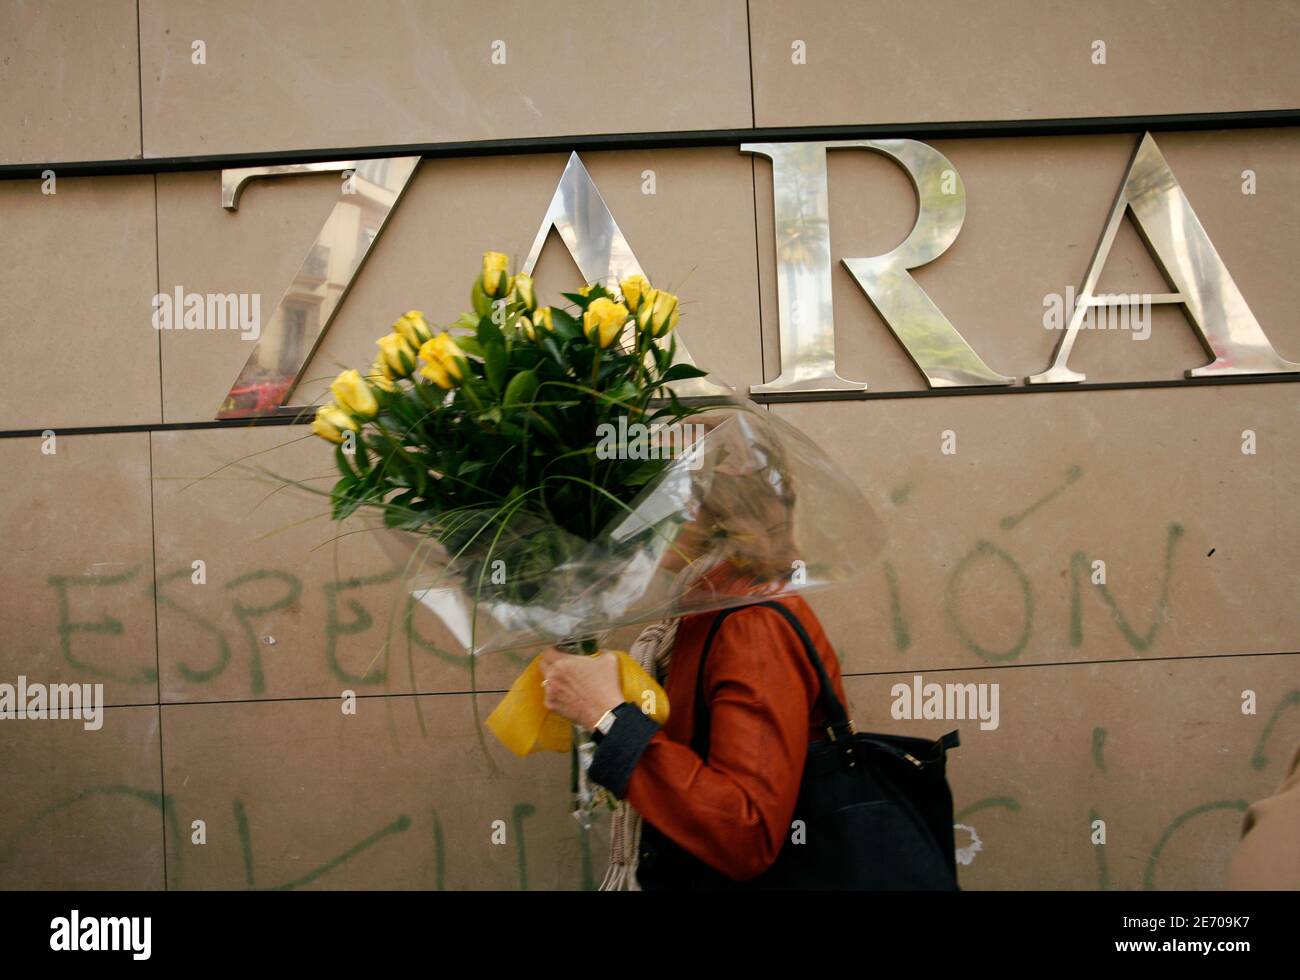 Une femme tenant un bouquet de fleurs se promène devant un magasin Zara  dans le centre de Séville le 25 mars 2009. Le plus grand détaillant  européen de vêtements Inditex sa prévoit